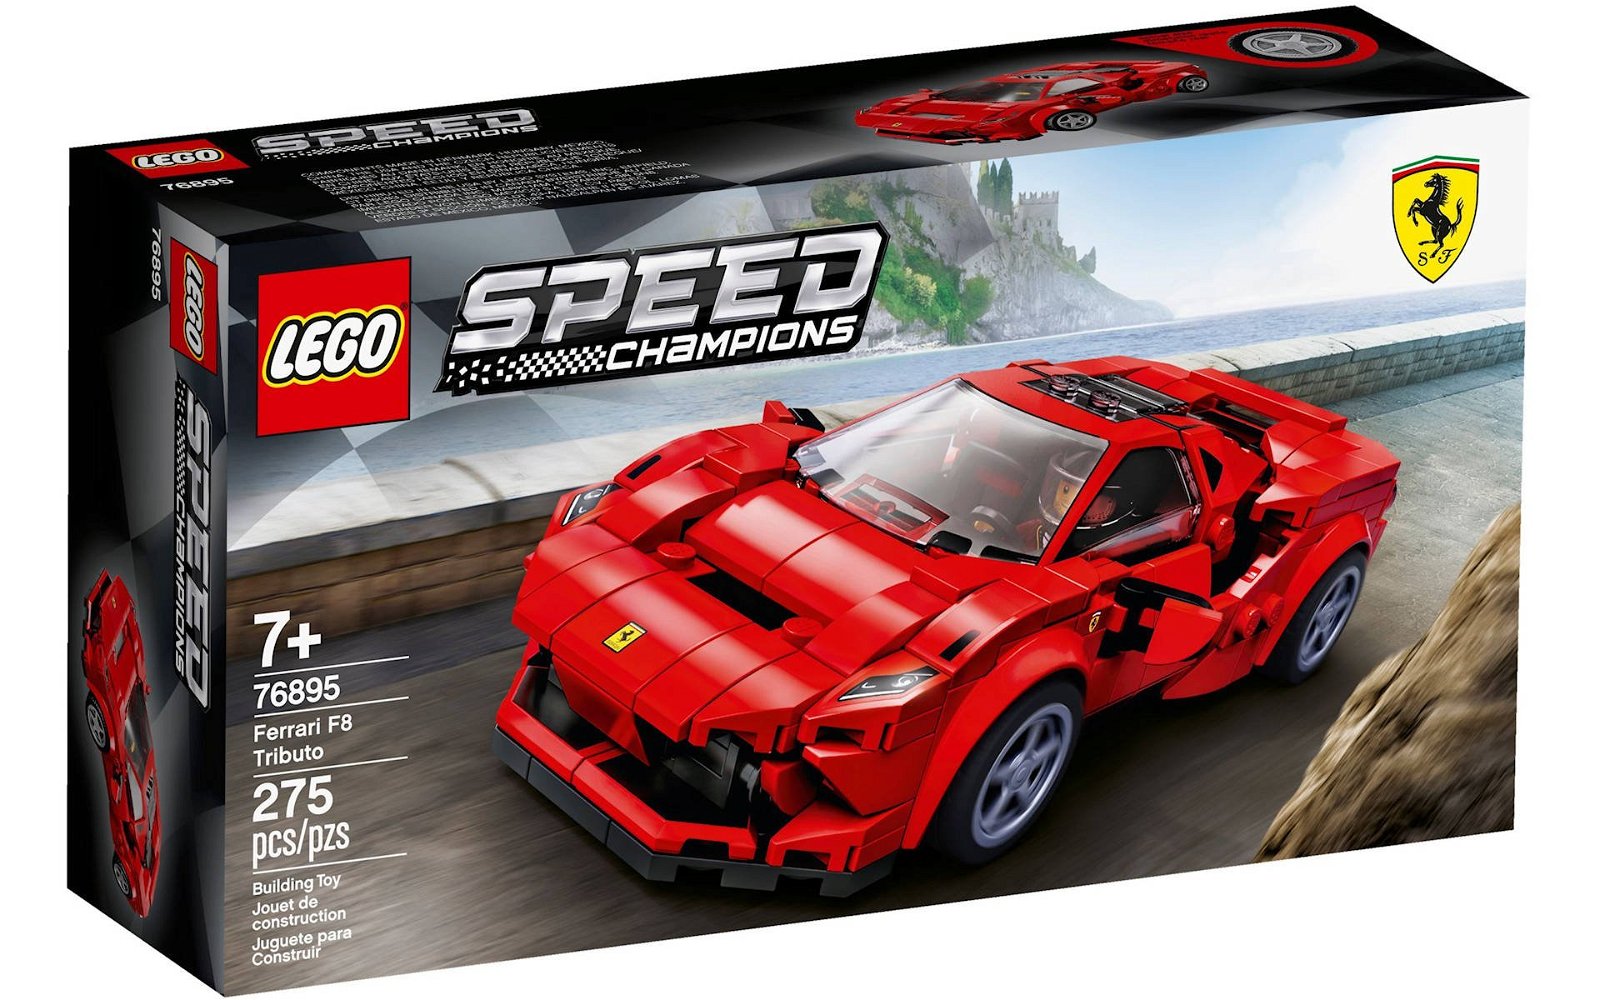 Immagine di LEGO set # 76895 Ferrari F8 Tributo: la recensione